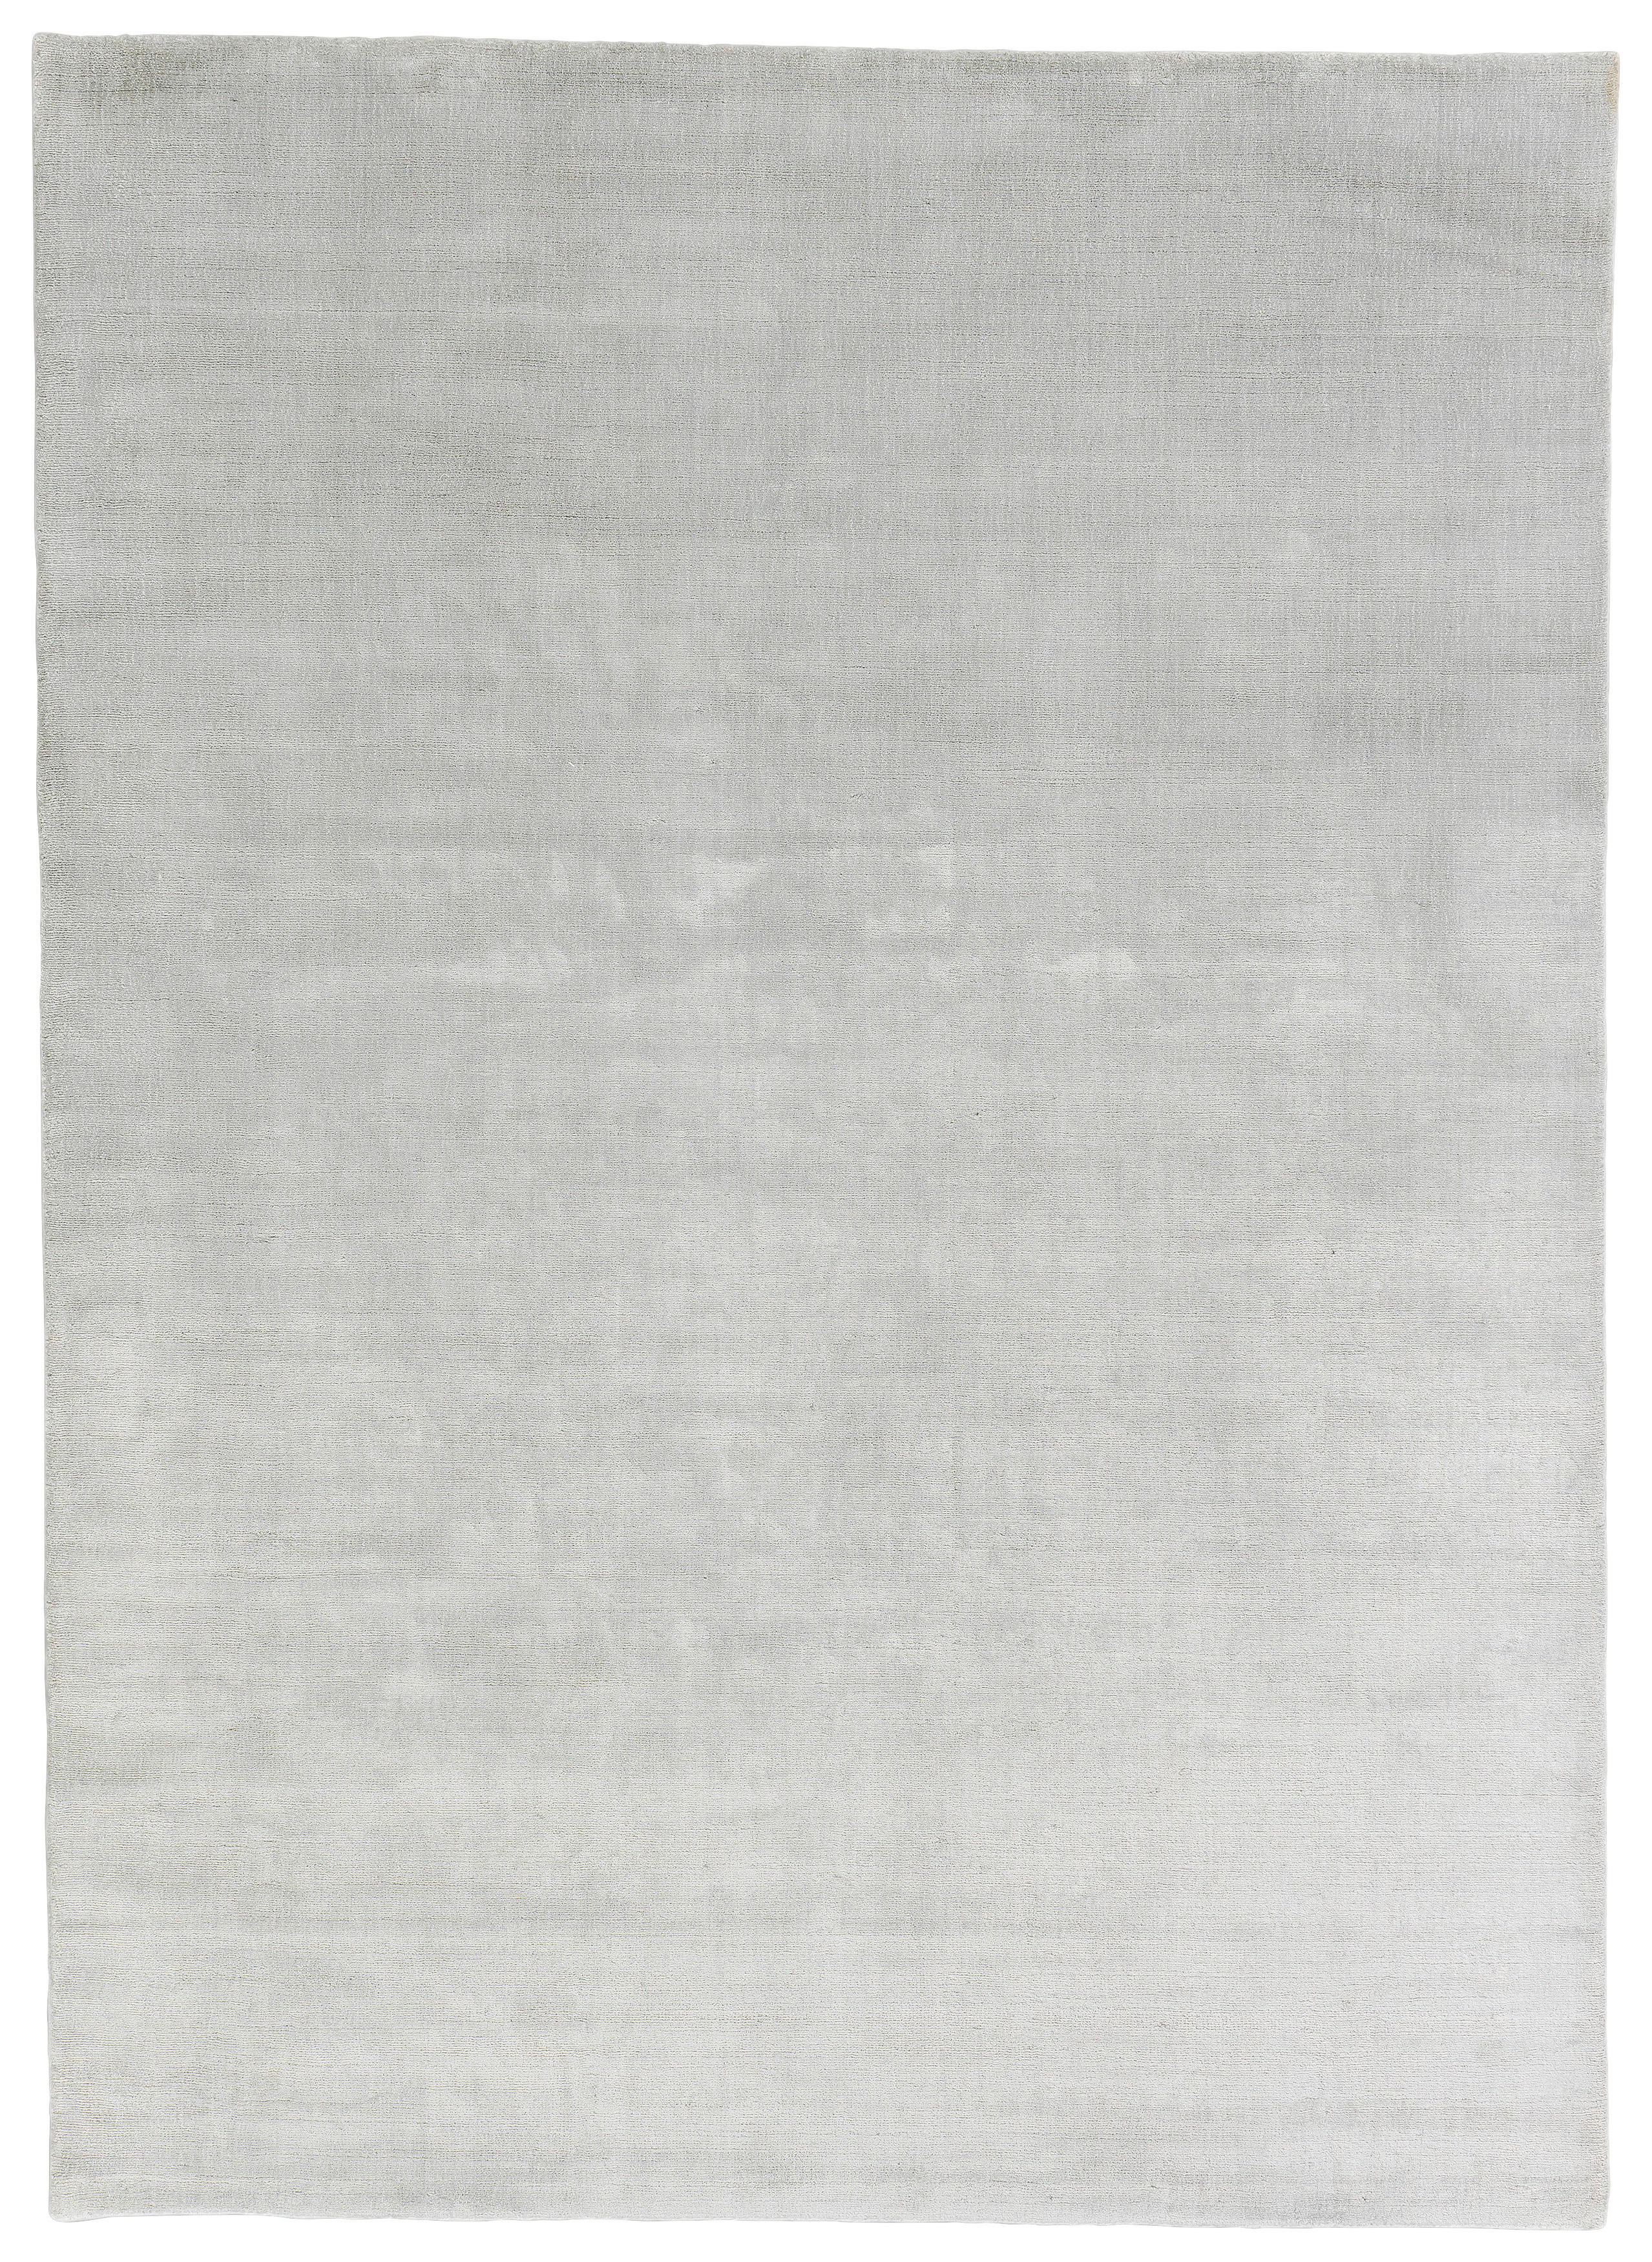 HANDWEBTEPPICH 140/200 cm  - Silberfarben, Basics, Textil (140/200cm) - Schöner Wohnen